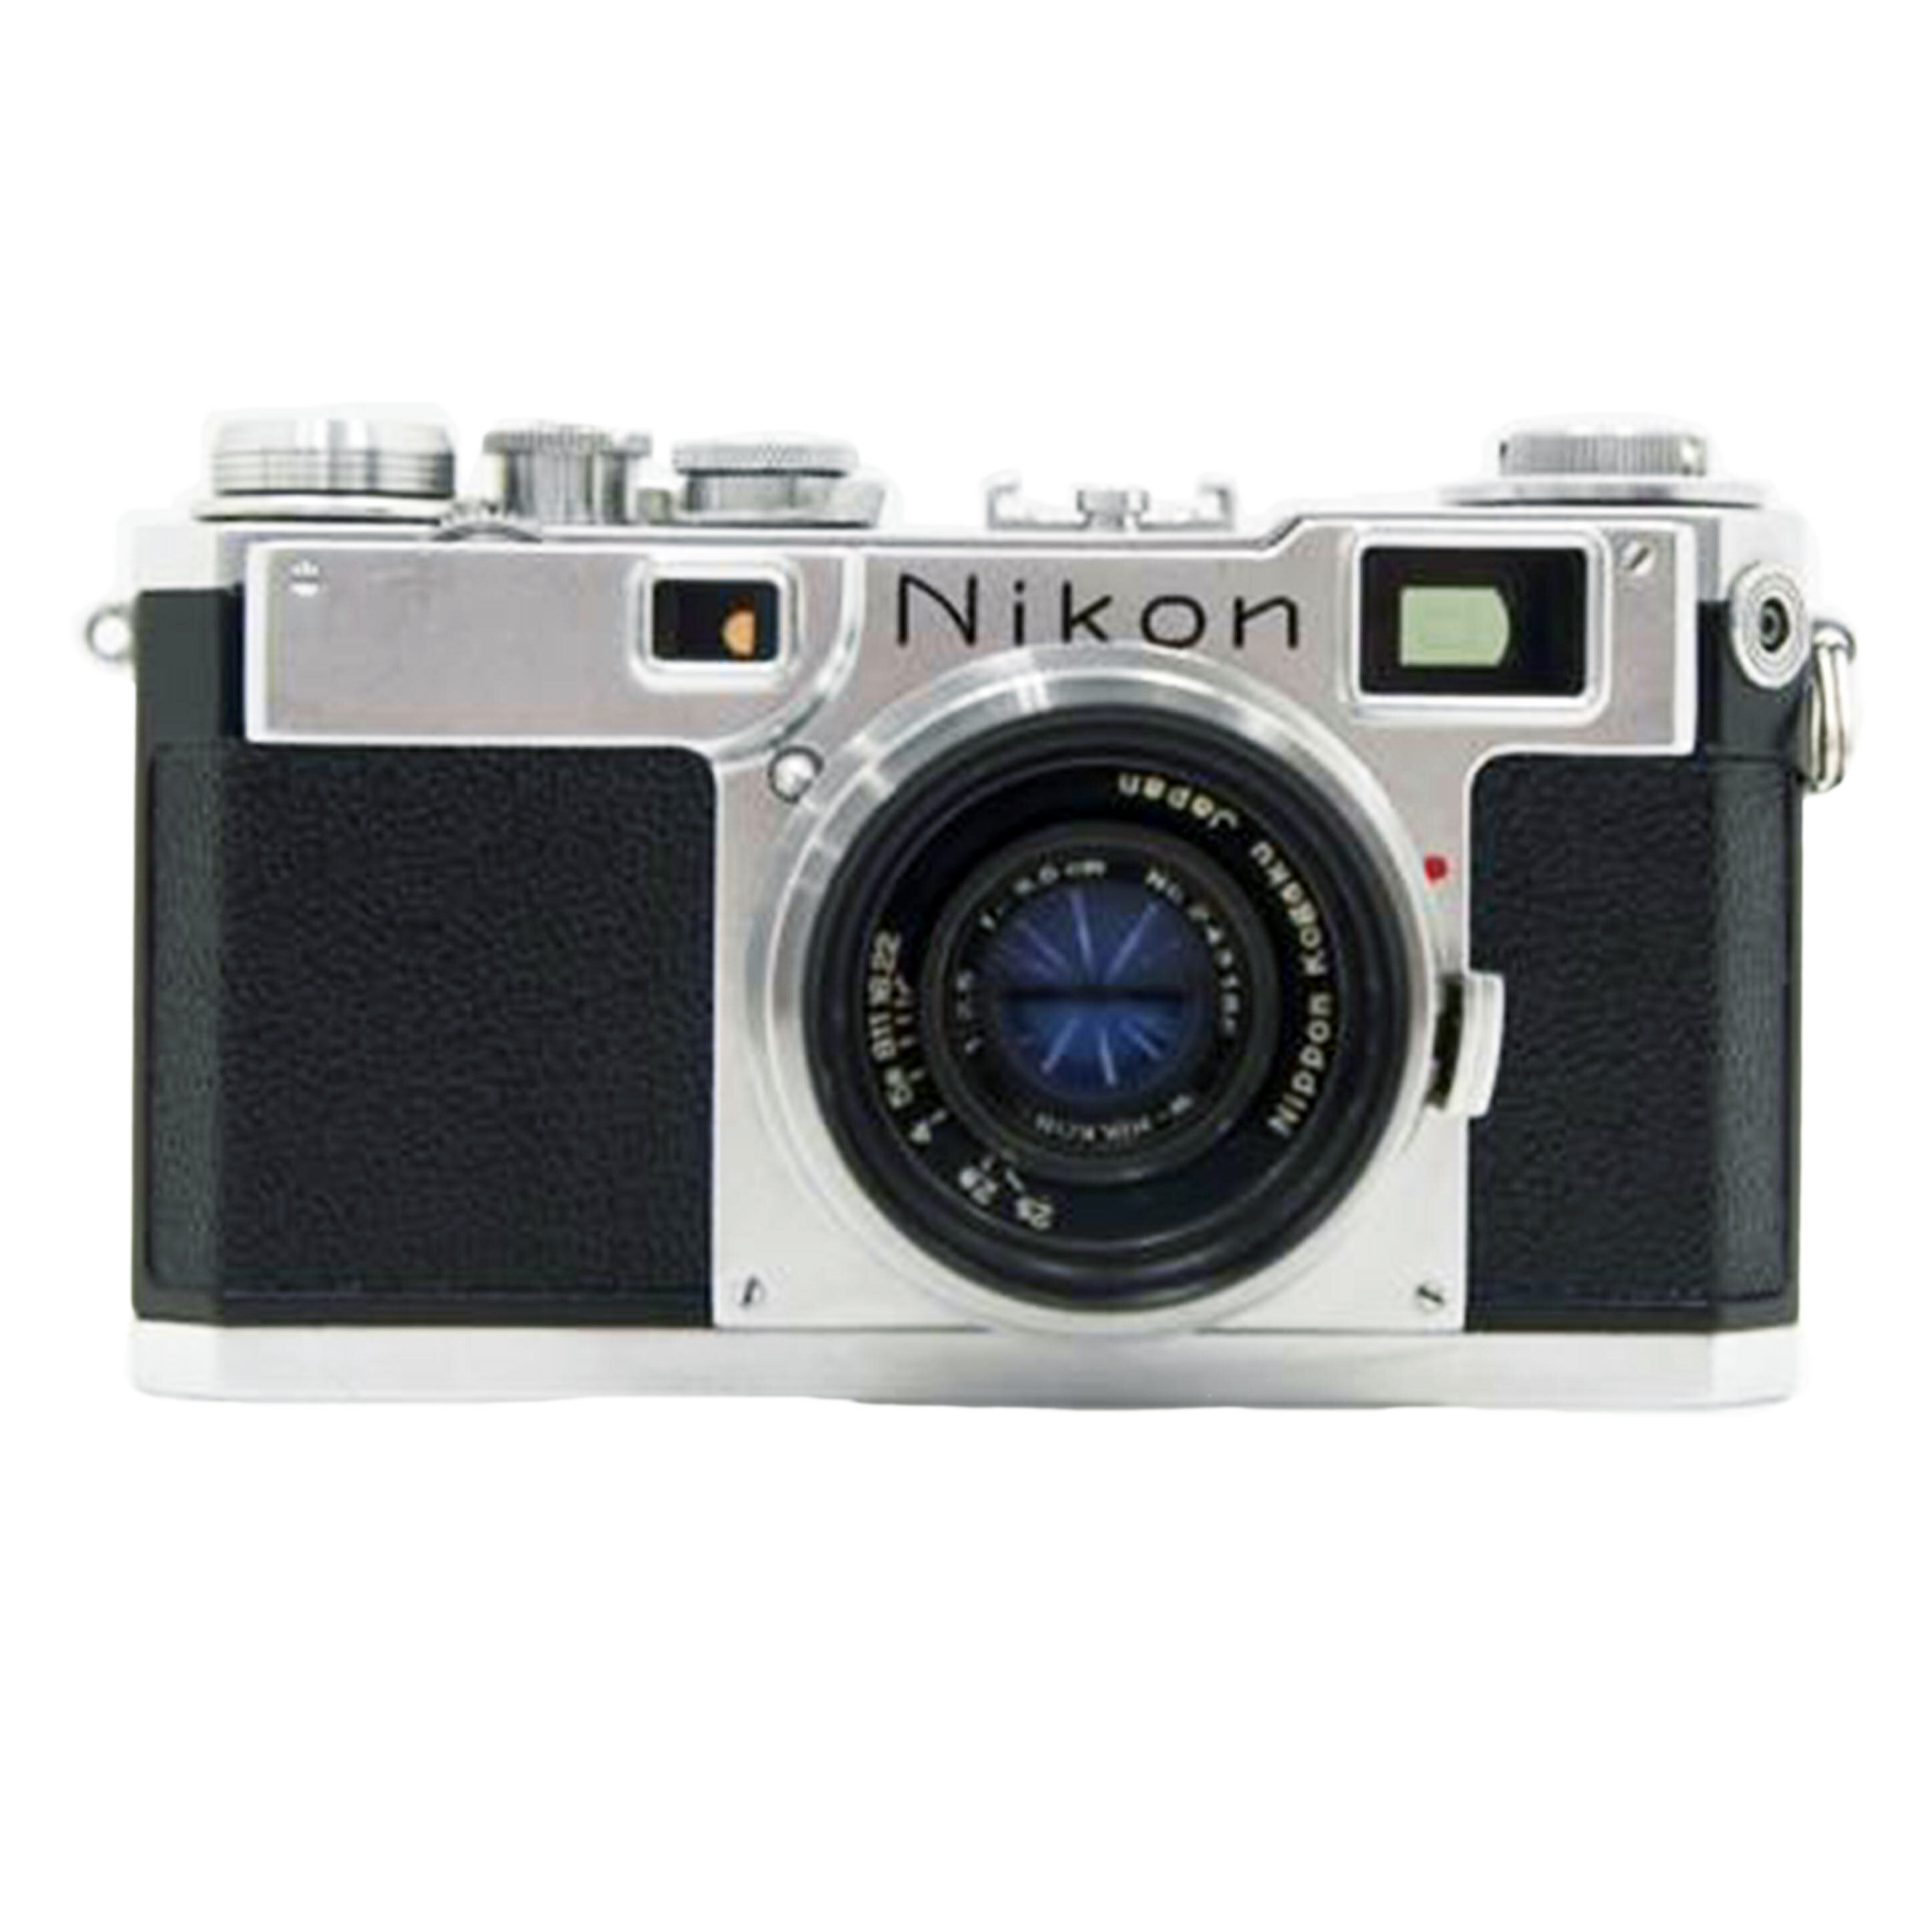 商品説明商品名カメラ関連メーカーNikon型番S2 NIKKOR 35/2.5製造No6146330コンディションランクBランク/スレ、汚れなど使用感はありますが、通常使用に問題のない状態です。付属品付属品の有無/無　内容は画像で確認ください。状態詳細キズがあります。商品についてこの商品はつくば店で取り扱いをしております。商品の詳しい状態や情報については、店舗へお気軽にお問い合わせくださいませ。1.中古品になりますので動作確認は行っておりますが、バッテリー等の消耗品や商品の細かい動作状況に関しましては、測定器等での正確な測定は行っていないため、商品によっては細かな調整が必要な場合があります。また、新品購入時に受けられる保証やユーザー登録等のメーカーサイトサービスについては、受けられない可能性がありますので予めご了承ください。2.商品発送につきましては、梱包サイズの3辺合計160cm以上、もしくは25kgを超える場合は時間指定が出来ませんのでご了承ください。3.掲載商品は、当社が運営する実店舗でも並行販売もしております。そのため、ご注文できた場合でも在庫確認のタイムラグにより商品が欠品する場合がございます。在庫状況については細心の注意を払っておりますが、万が一売り違い等が発生した場合はご購入をキャンセルとさせていただく場合がございます。ご注文については、当店からの【ご注文ありがとうございます】メールが送信された時点で確定とさせていただきます。常に最新の在庫をご案内するよう心掛けておりますが、ご理解くださいますようお願い申しあげます。4.中古品の特性上、展示・保管状態により写真には見られない多少のスレや傷などが発生する場合がございます。商品状態は1点1点、傷・汚れなどの状態チェックをし、状態の記載と画像の記載を心がけておりますが、細かい部分の見落としや、目に見えない部分の劣化が進行している場合も考えれられます。その旨ご理解いただき、ご購入を検討下さいますようお願い申し上げます。中古 レンジファインダーカメラNikonS2 NIKKOR 35/2.5コンデションランク【B】https://image.rakuten.co.jp/digirex/cabinet/6457/17/103